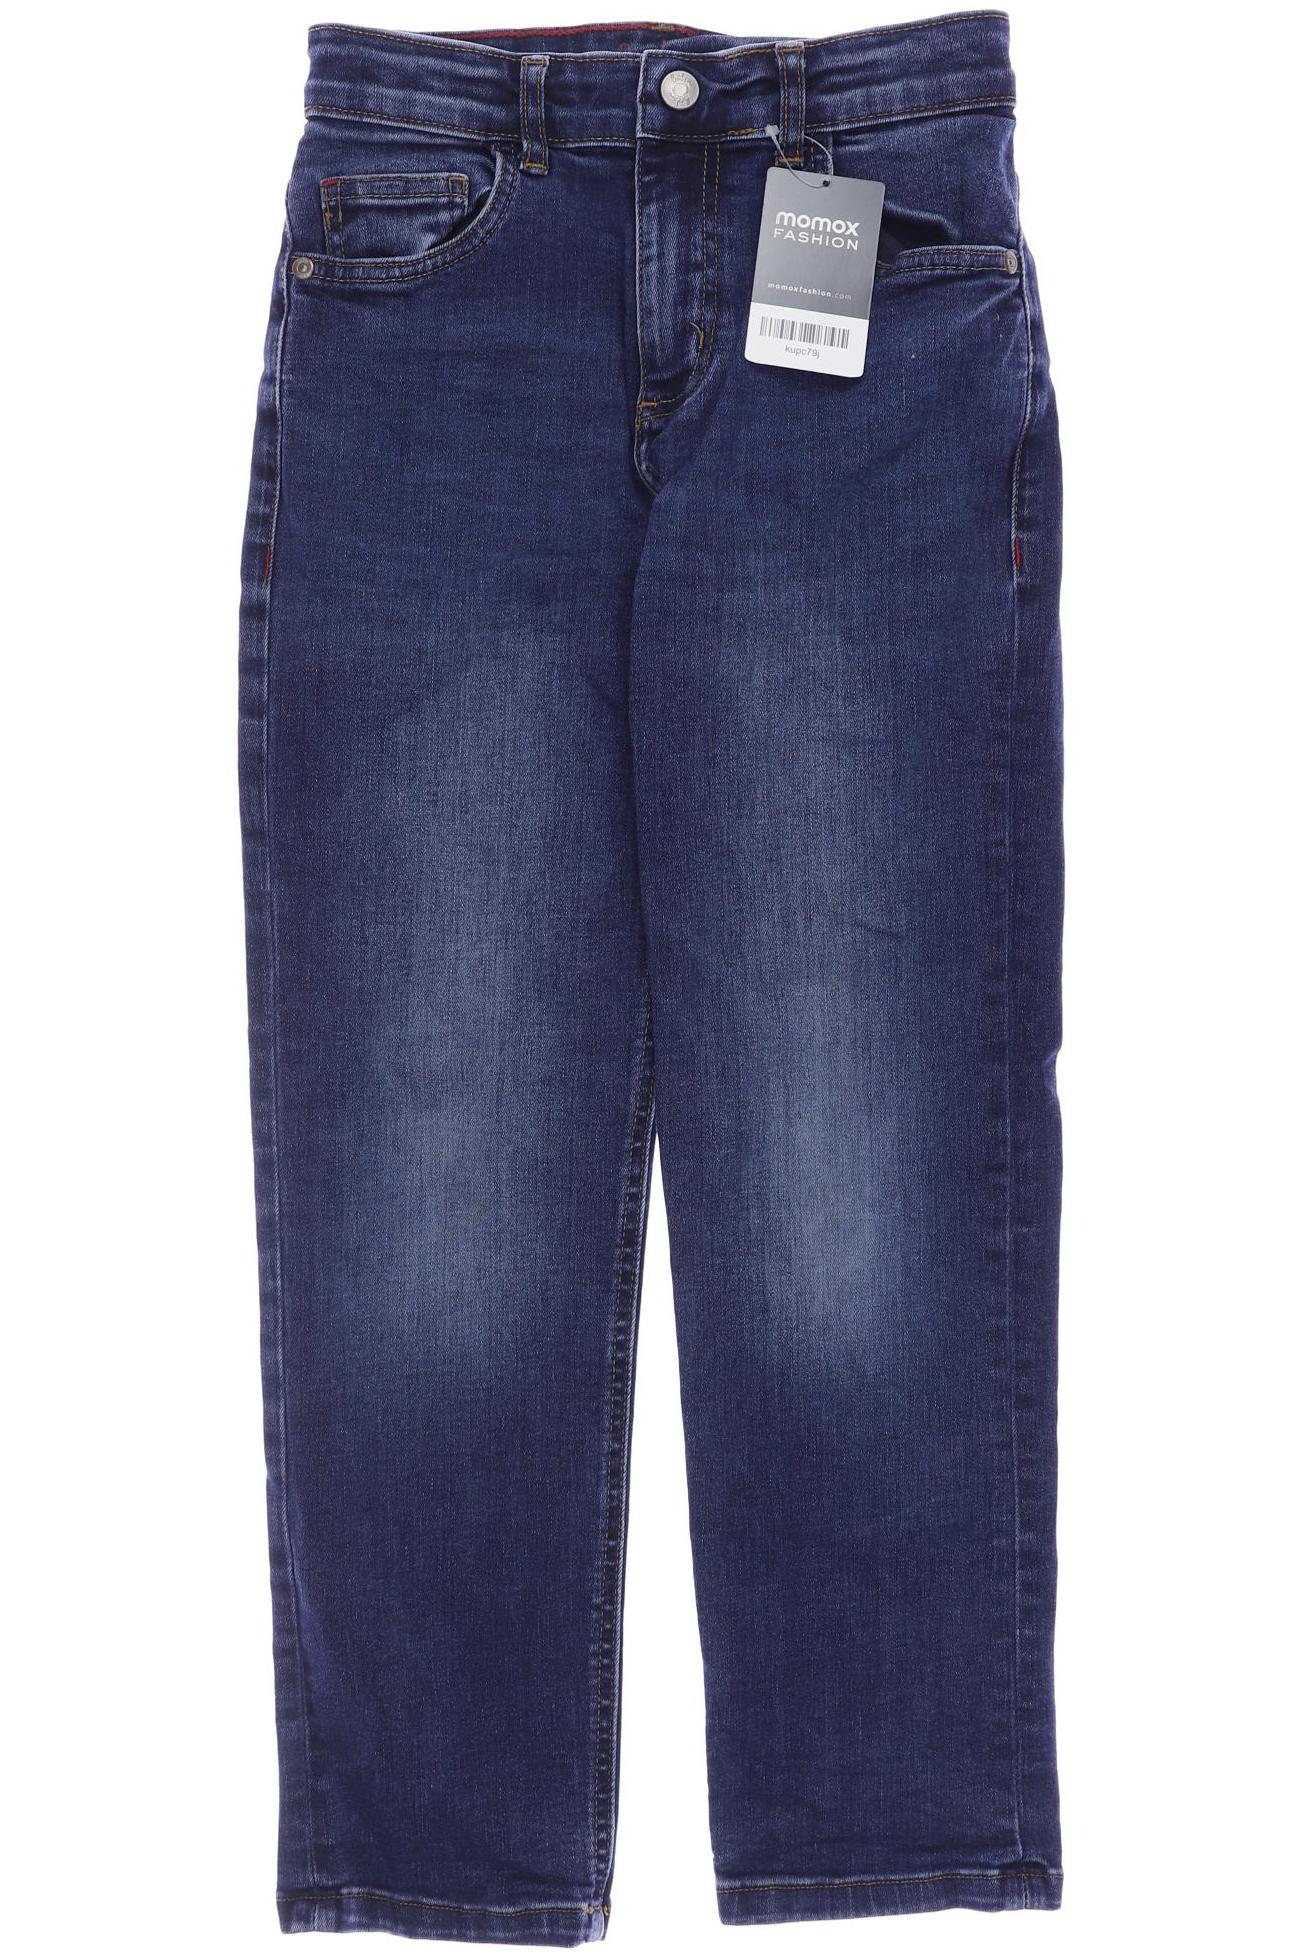 Boden Herren Jeans, blau, Gr. 140 von Boden